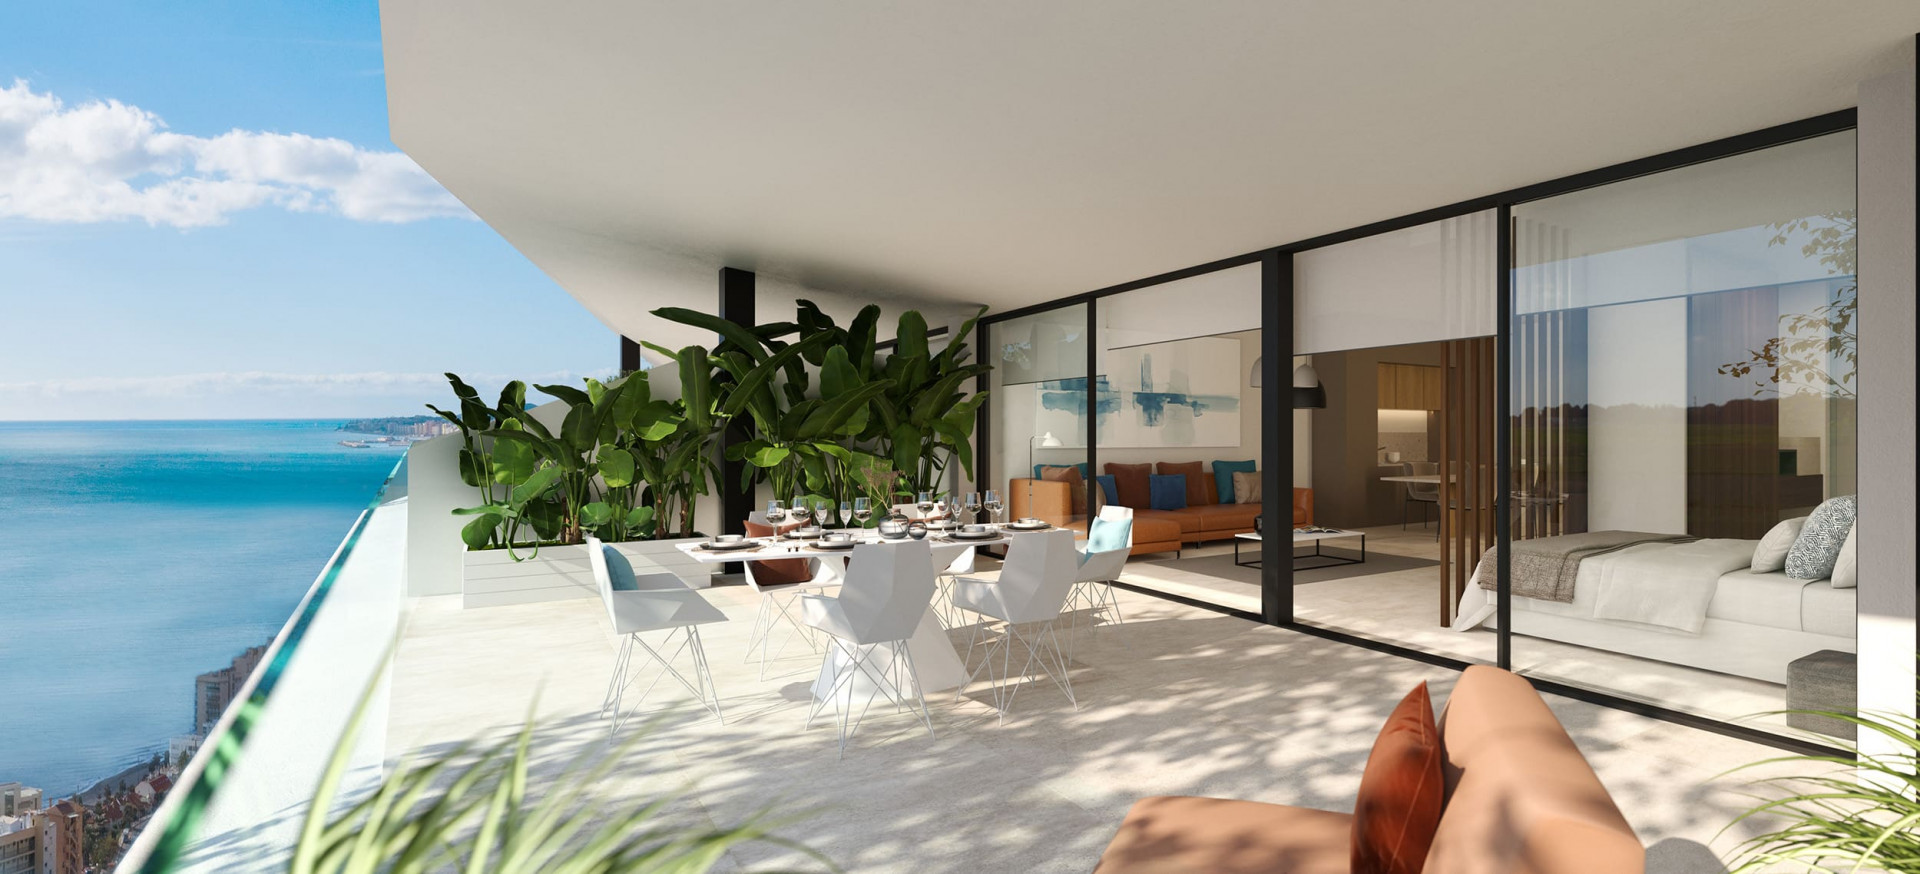 New three bedroom flat with private garden in Reserva del Higueron, Fuengirola.